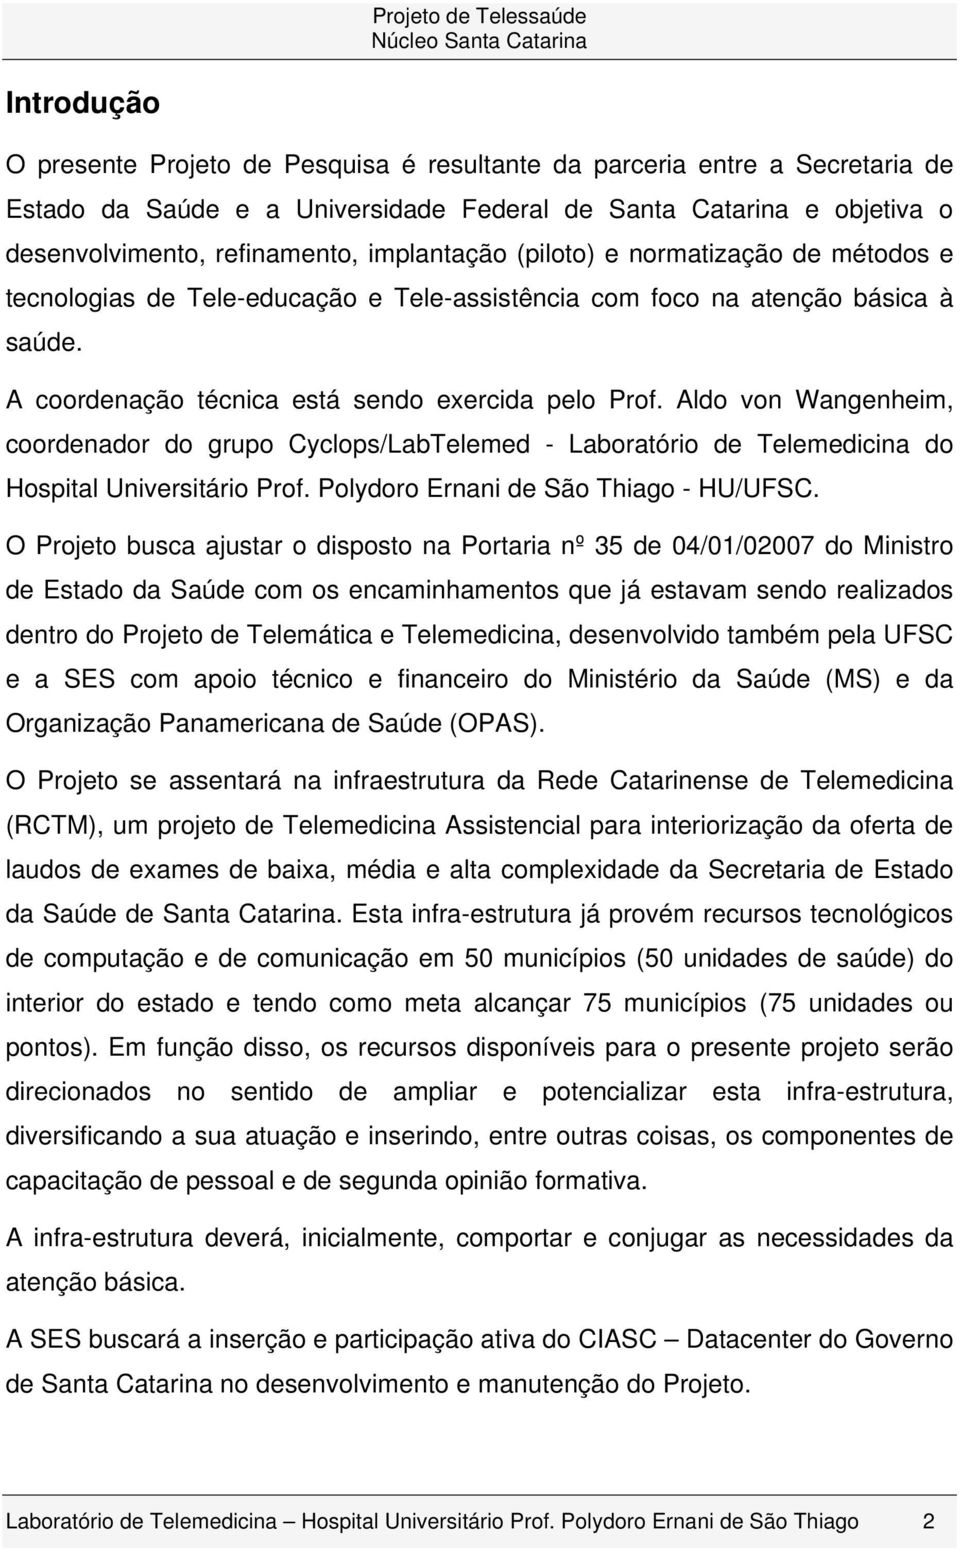 Aldo von Wangenheim, coordenador do grupo Cyclops/LabTelemed - Laboratório de Telemedicina do Hospital Universitário Prof. Polydoro Ernani de São Thiago - HU/UFSC.